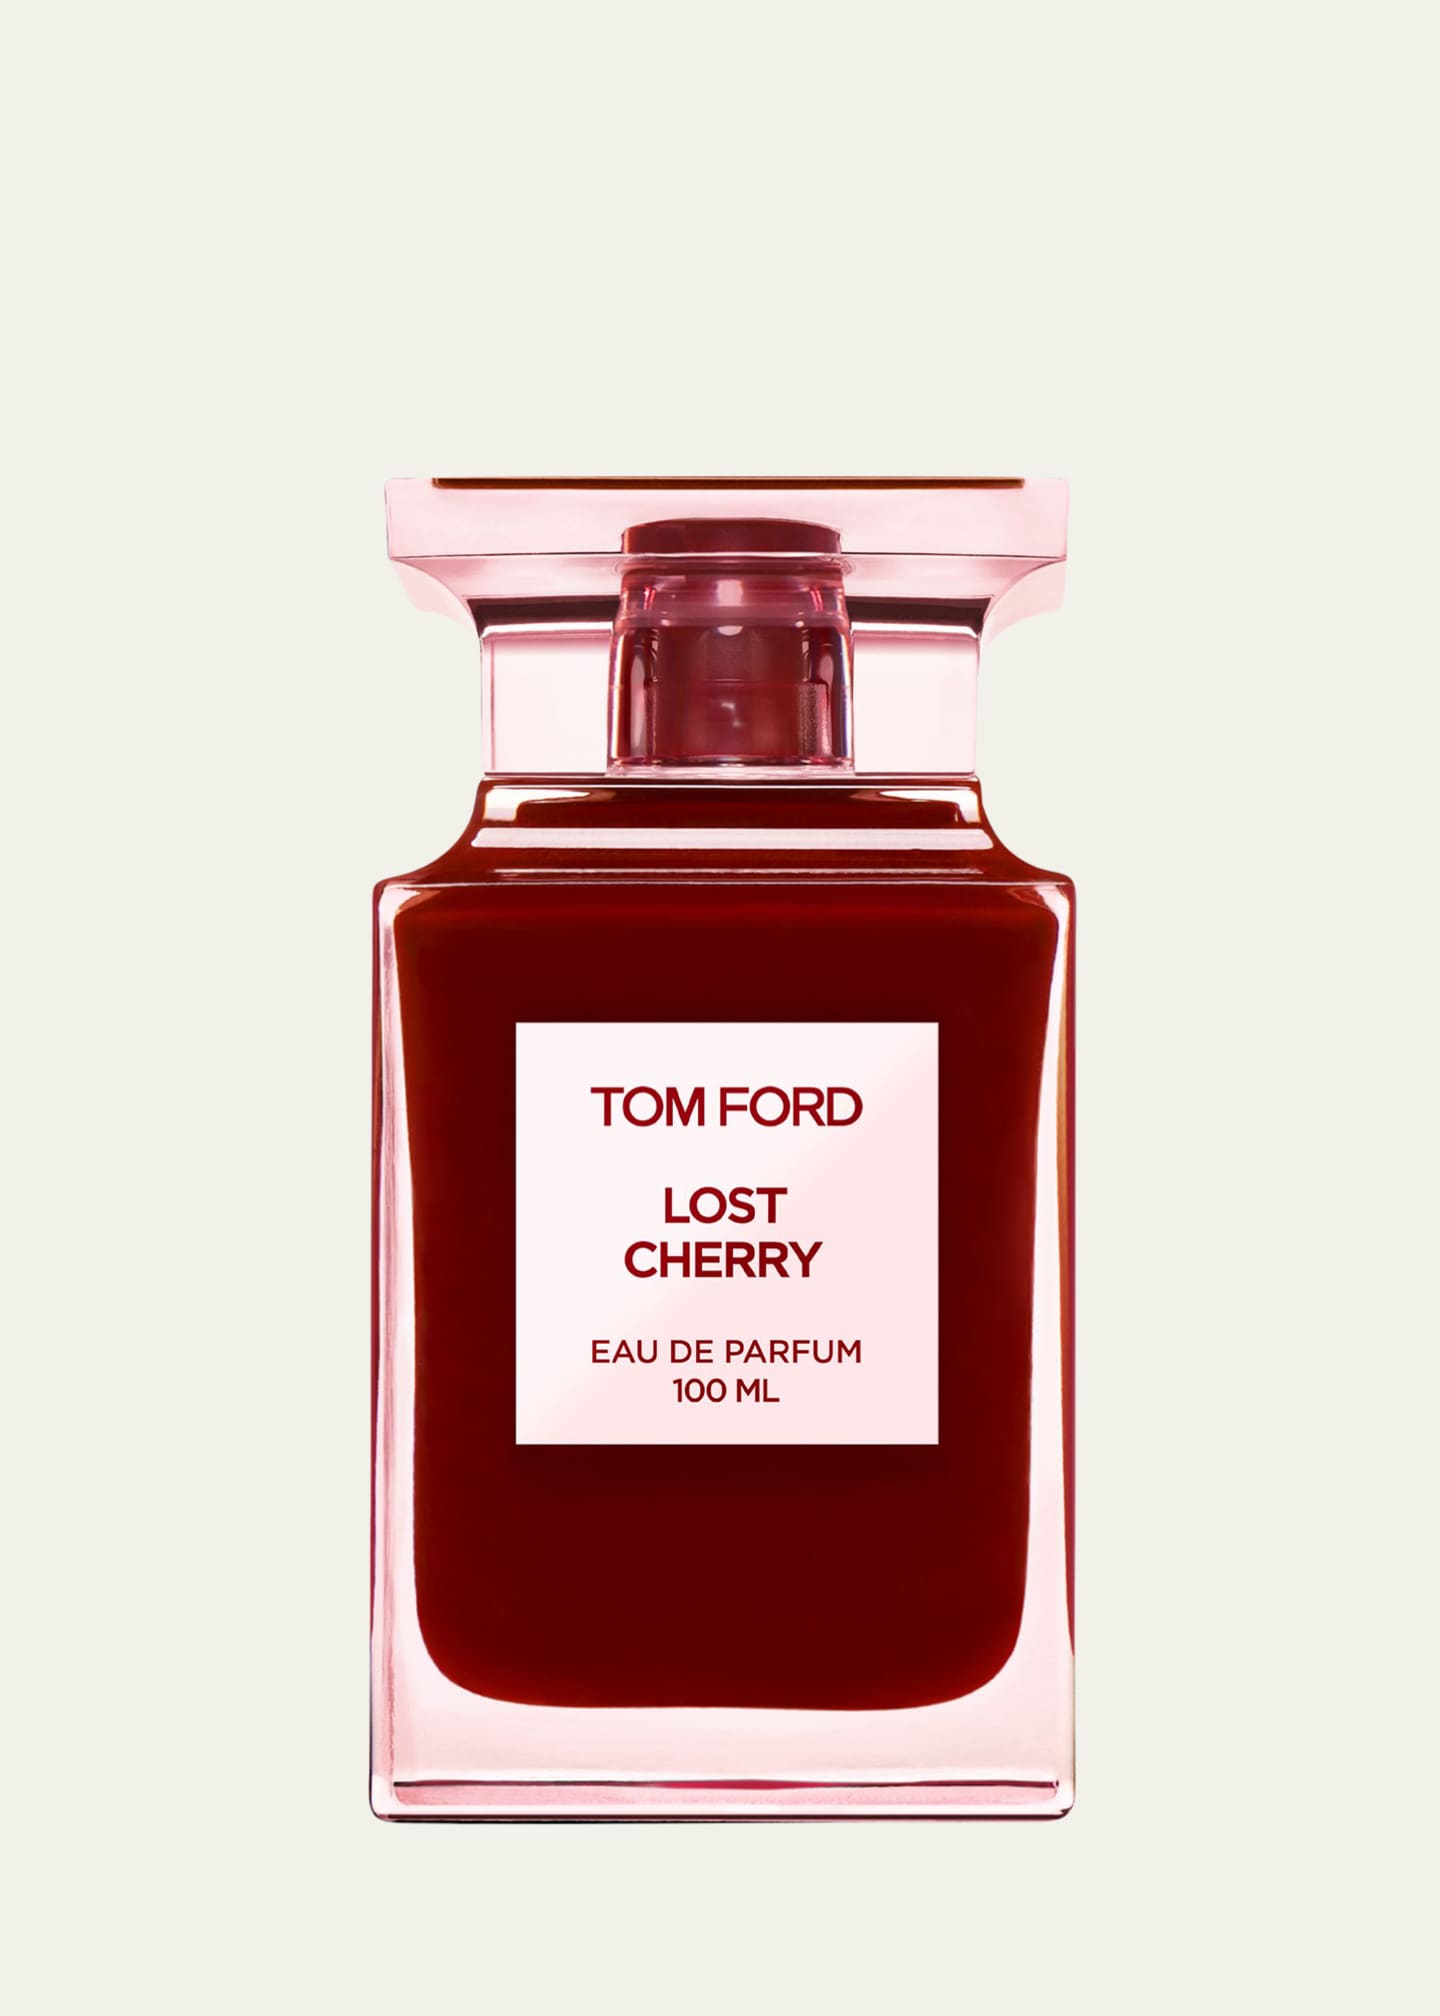 Tom Ford 3.4 oz. Lost Cherry Eau de Parfum